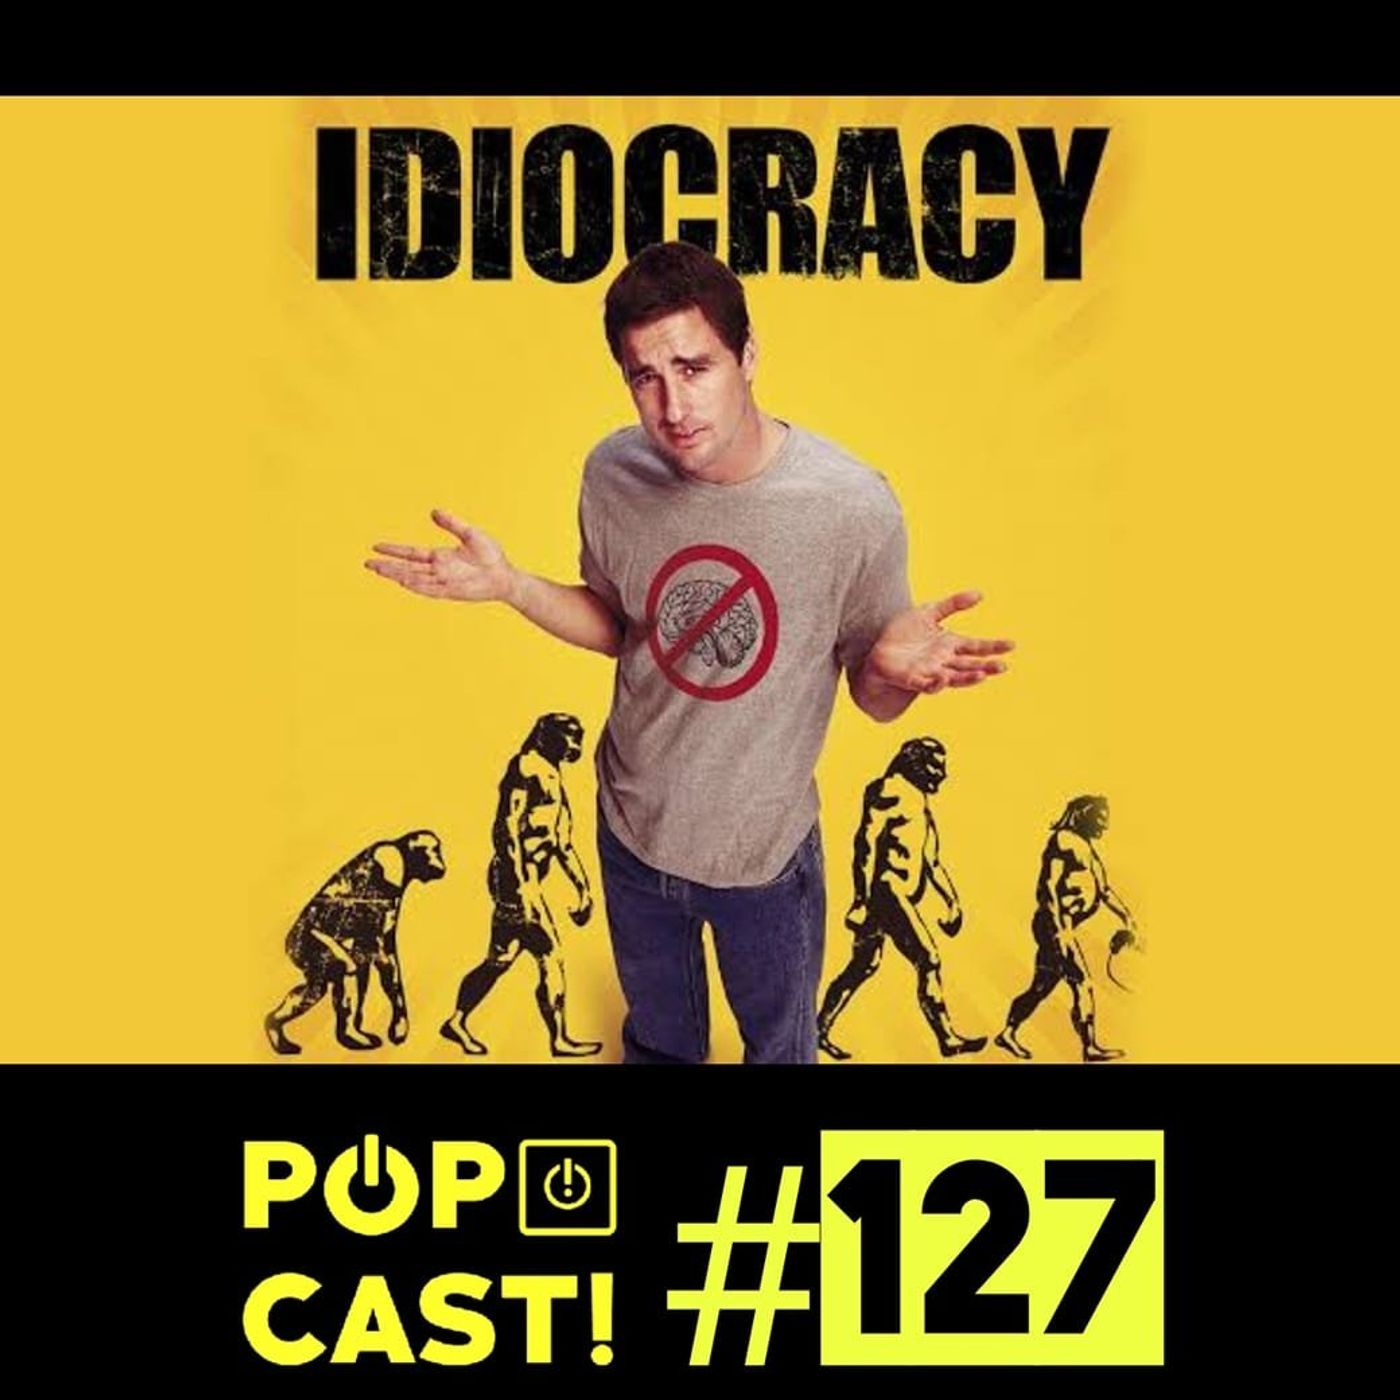 Pópcast! #127 - Idiocracia